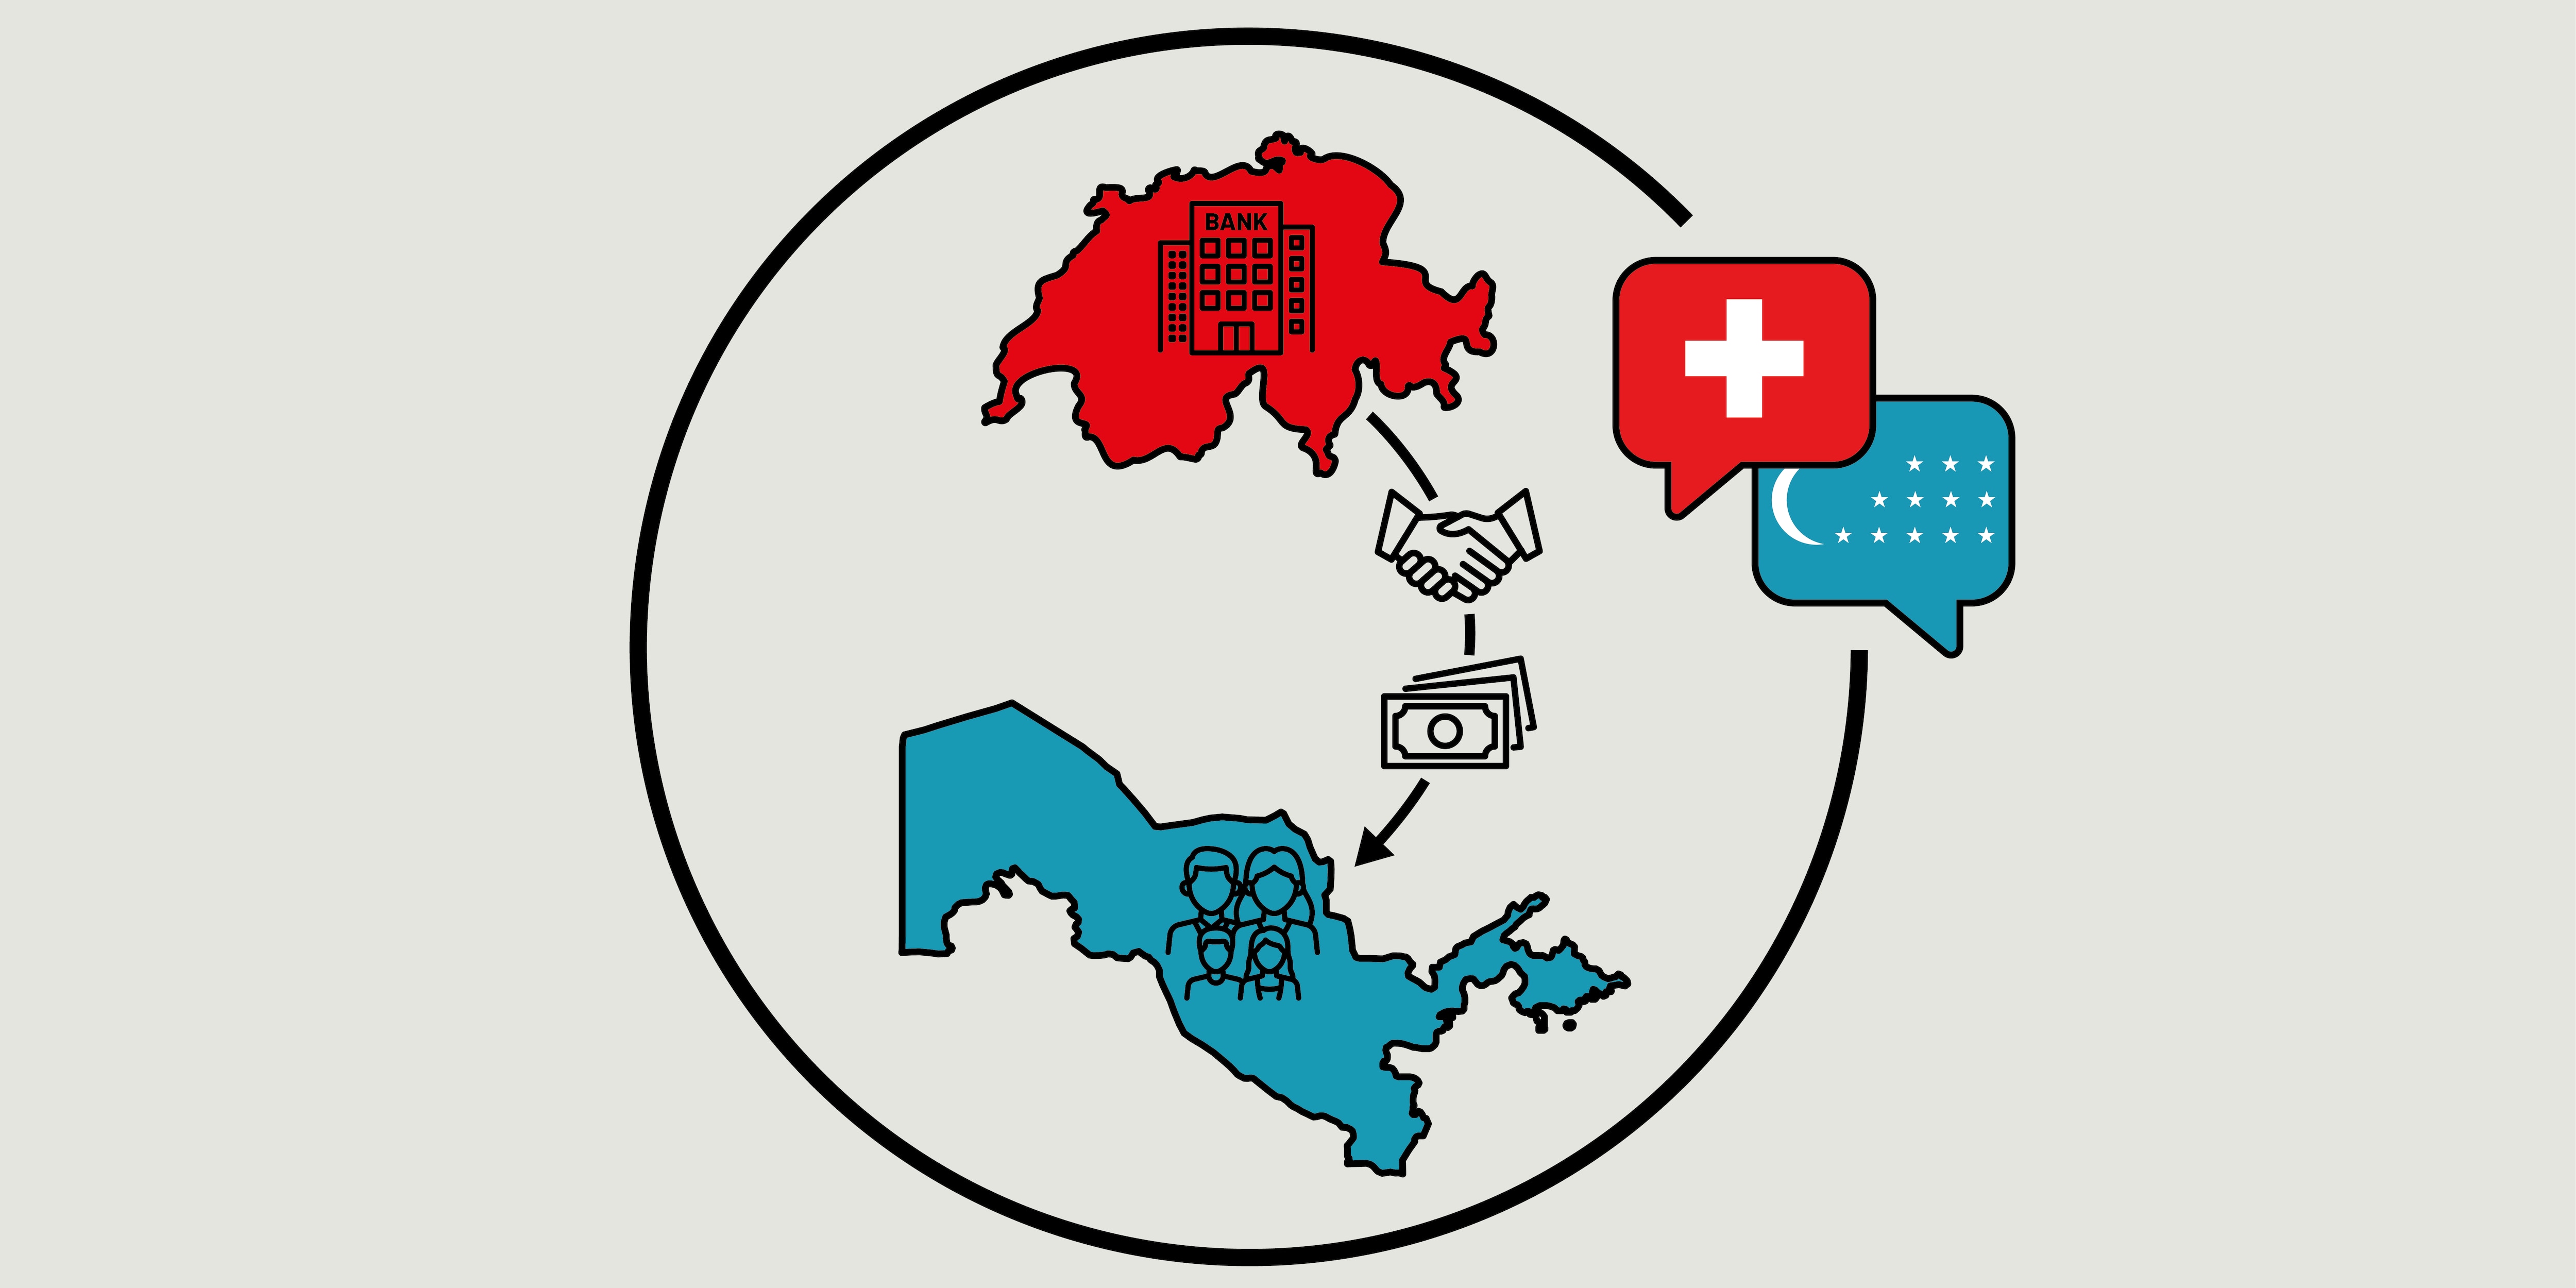 Une illustration représentant la Suisse et l’Ouzbékistan explique le processus de restitution.